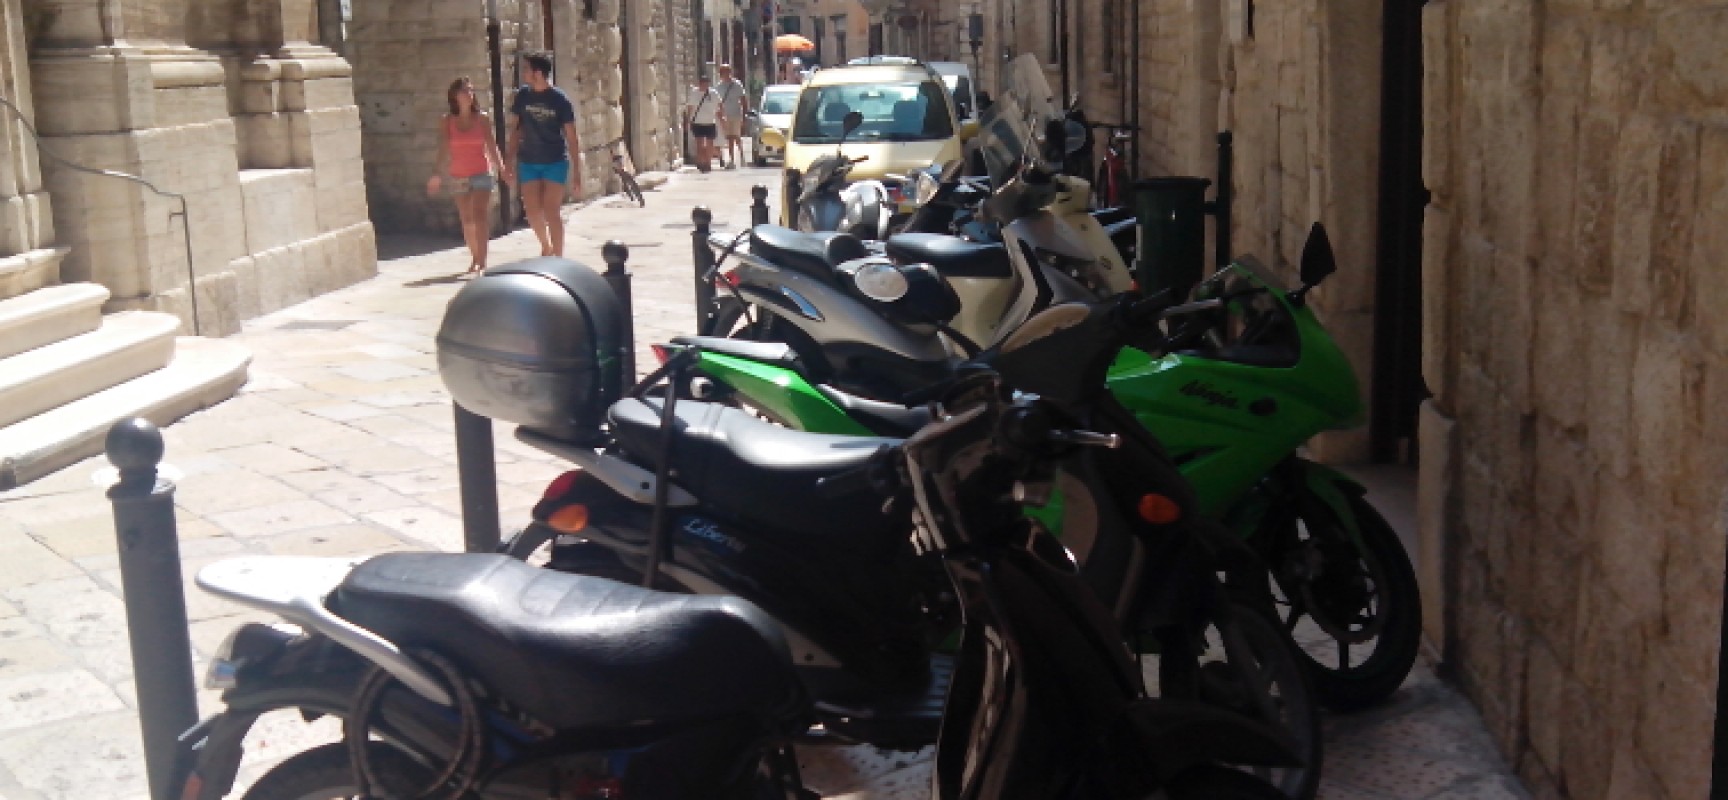 Su via Giulio Frisari (Biblioteca Comunale) l’area pedonale diventa parcheggio di motocicli / FOTO